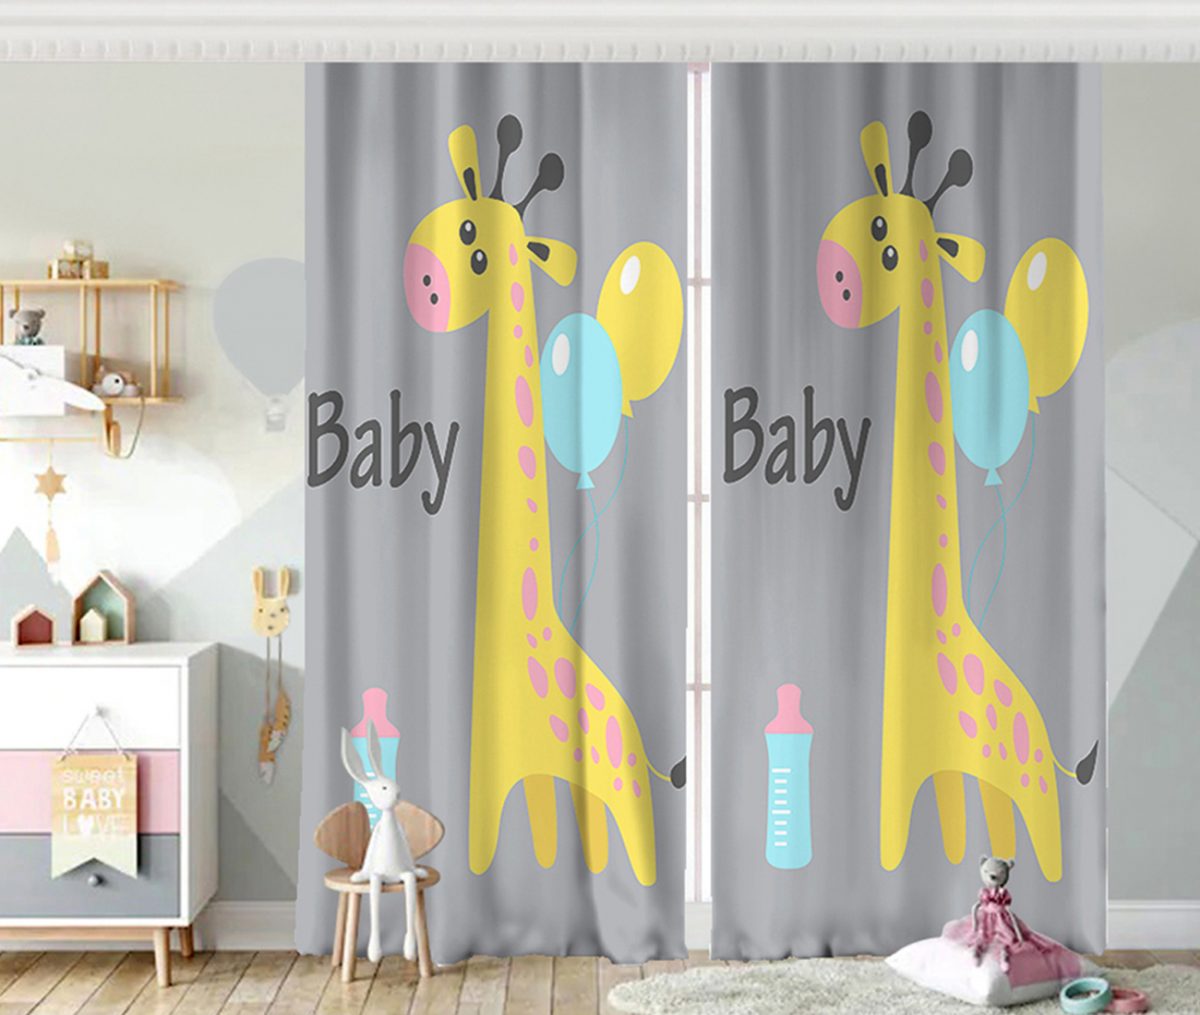 Gri Zeminde Balon ve Zürafa Desenli Özel Tasarım Bebek Odası Fon Perde Realhomes